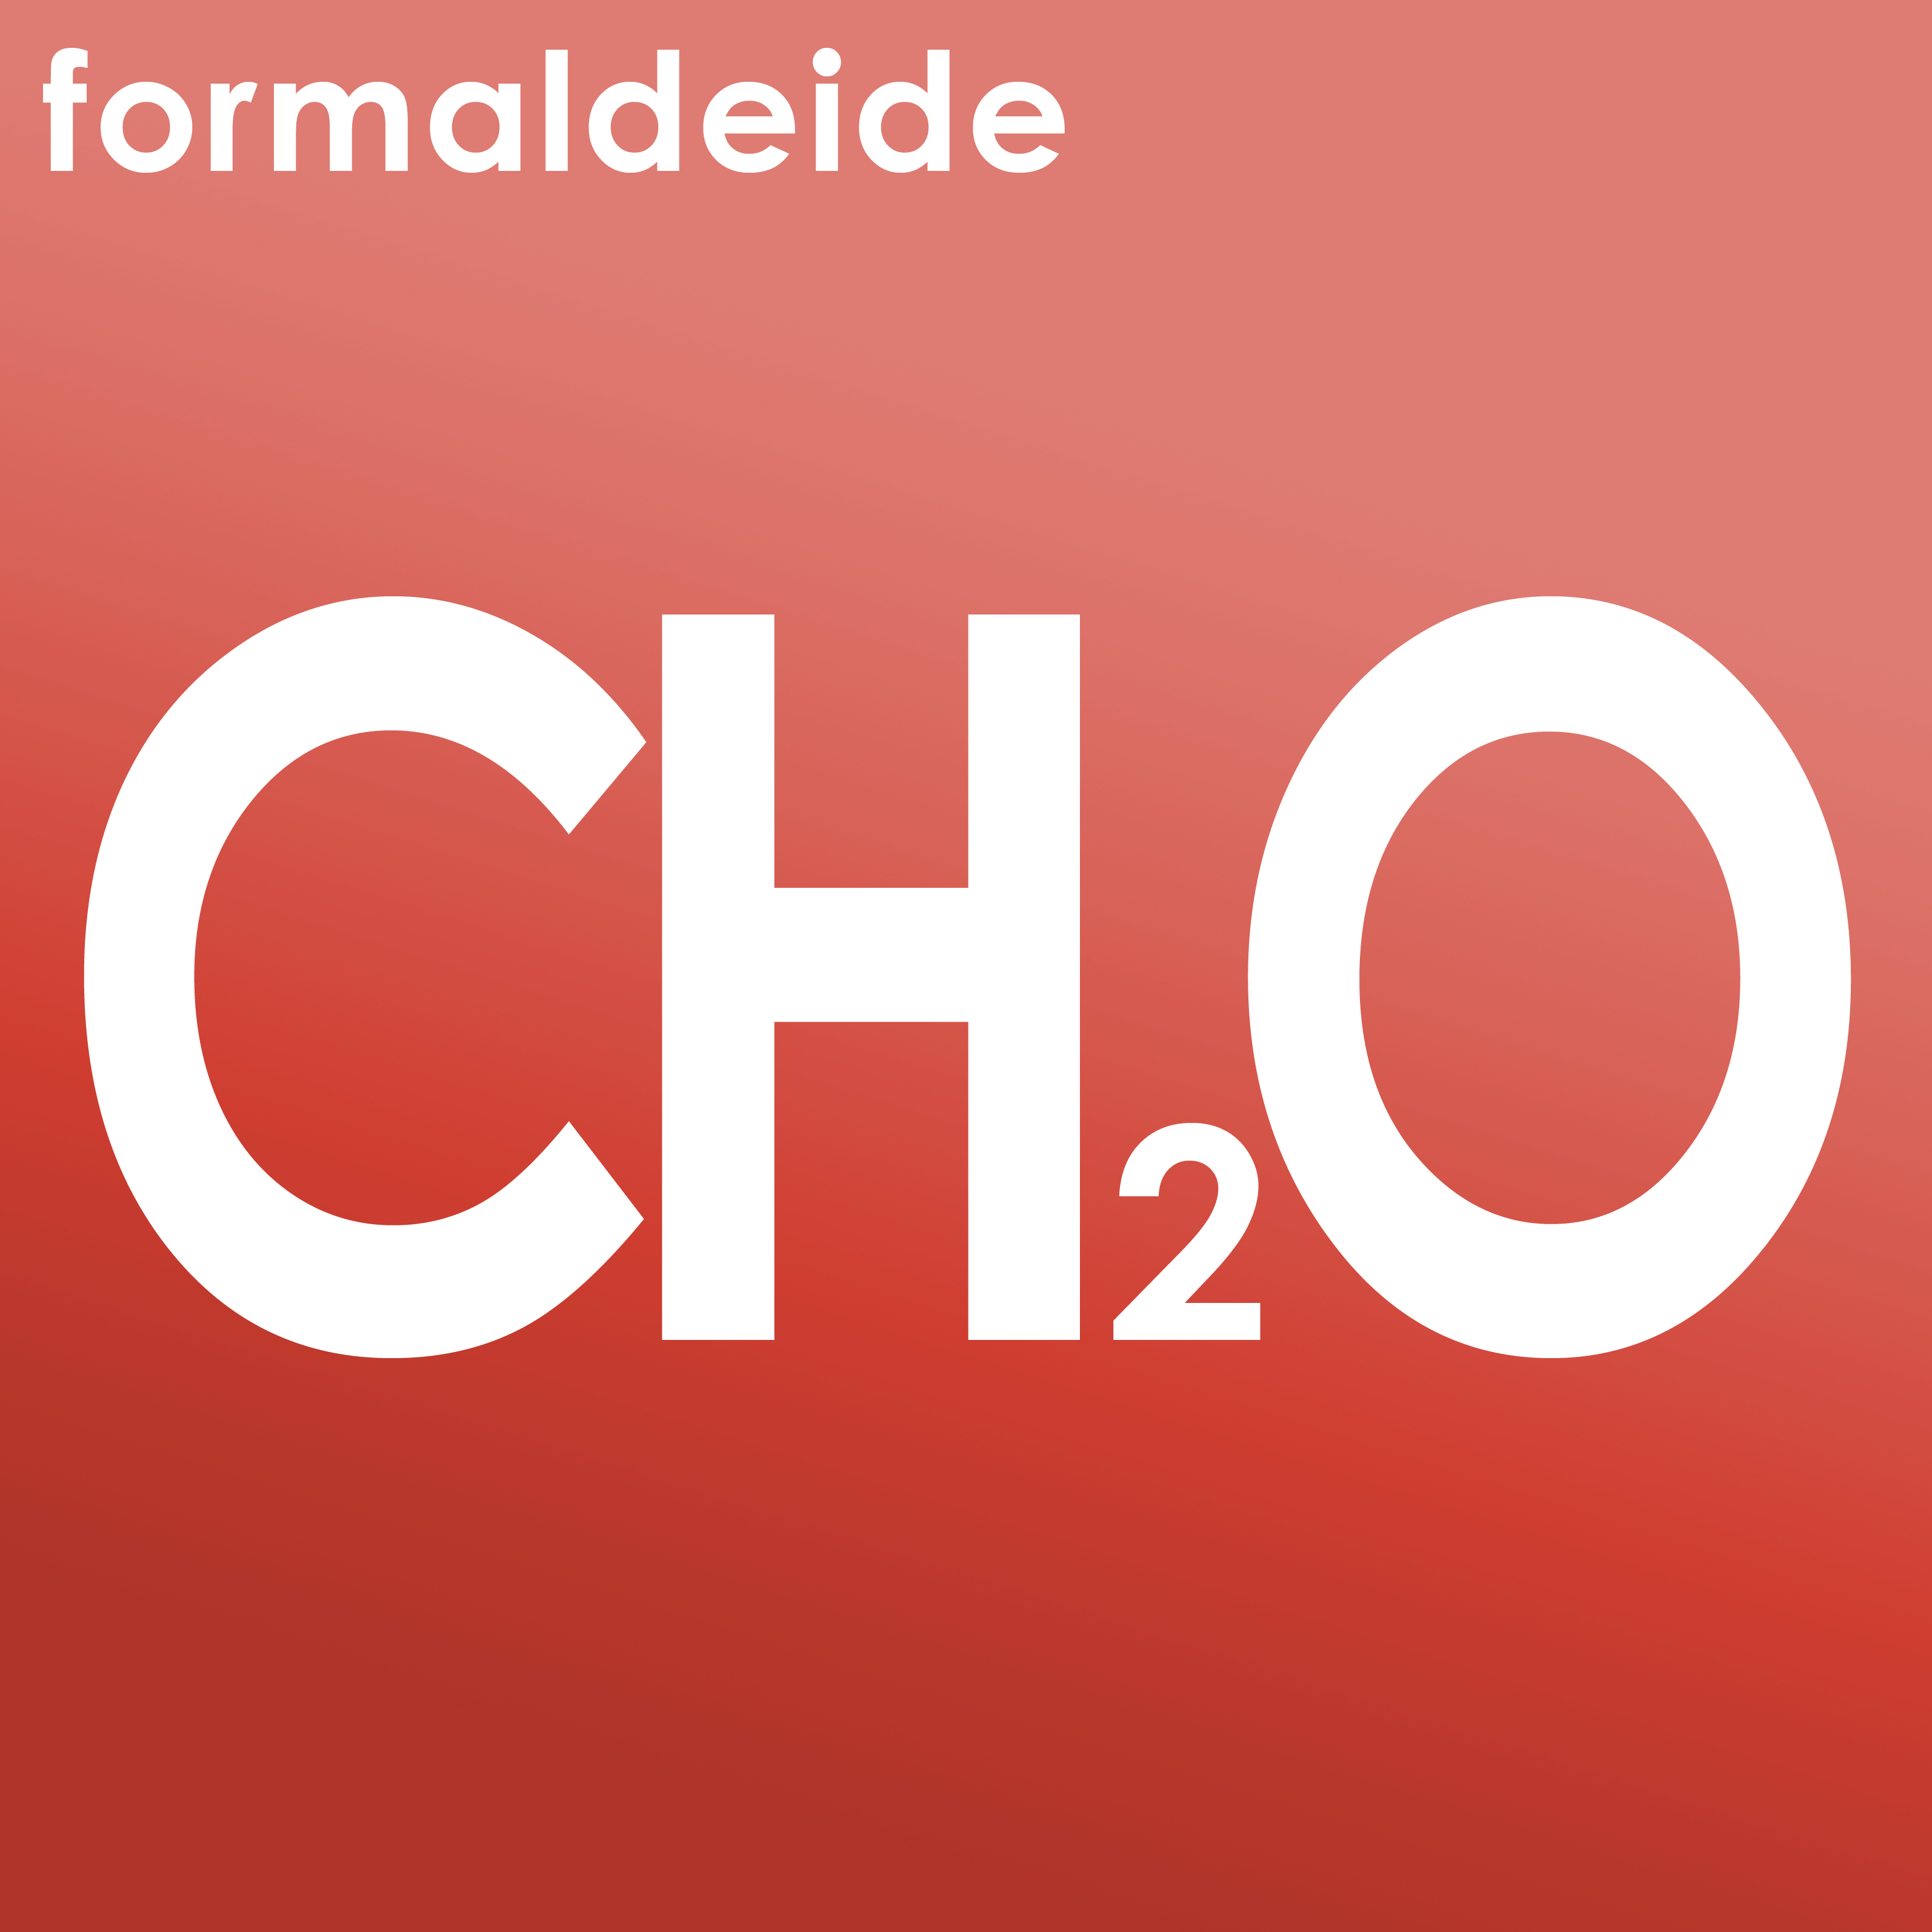 Formula chimica della formaldeide